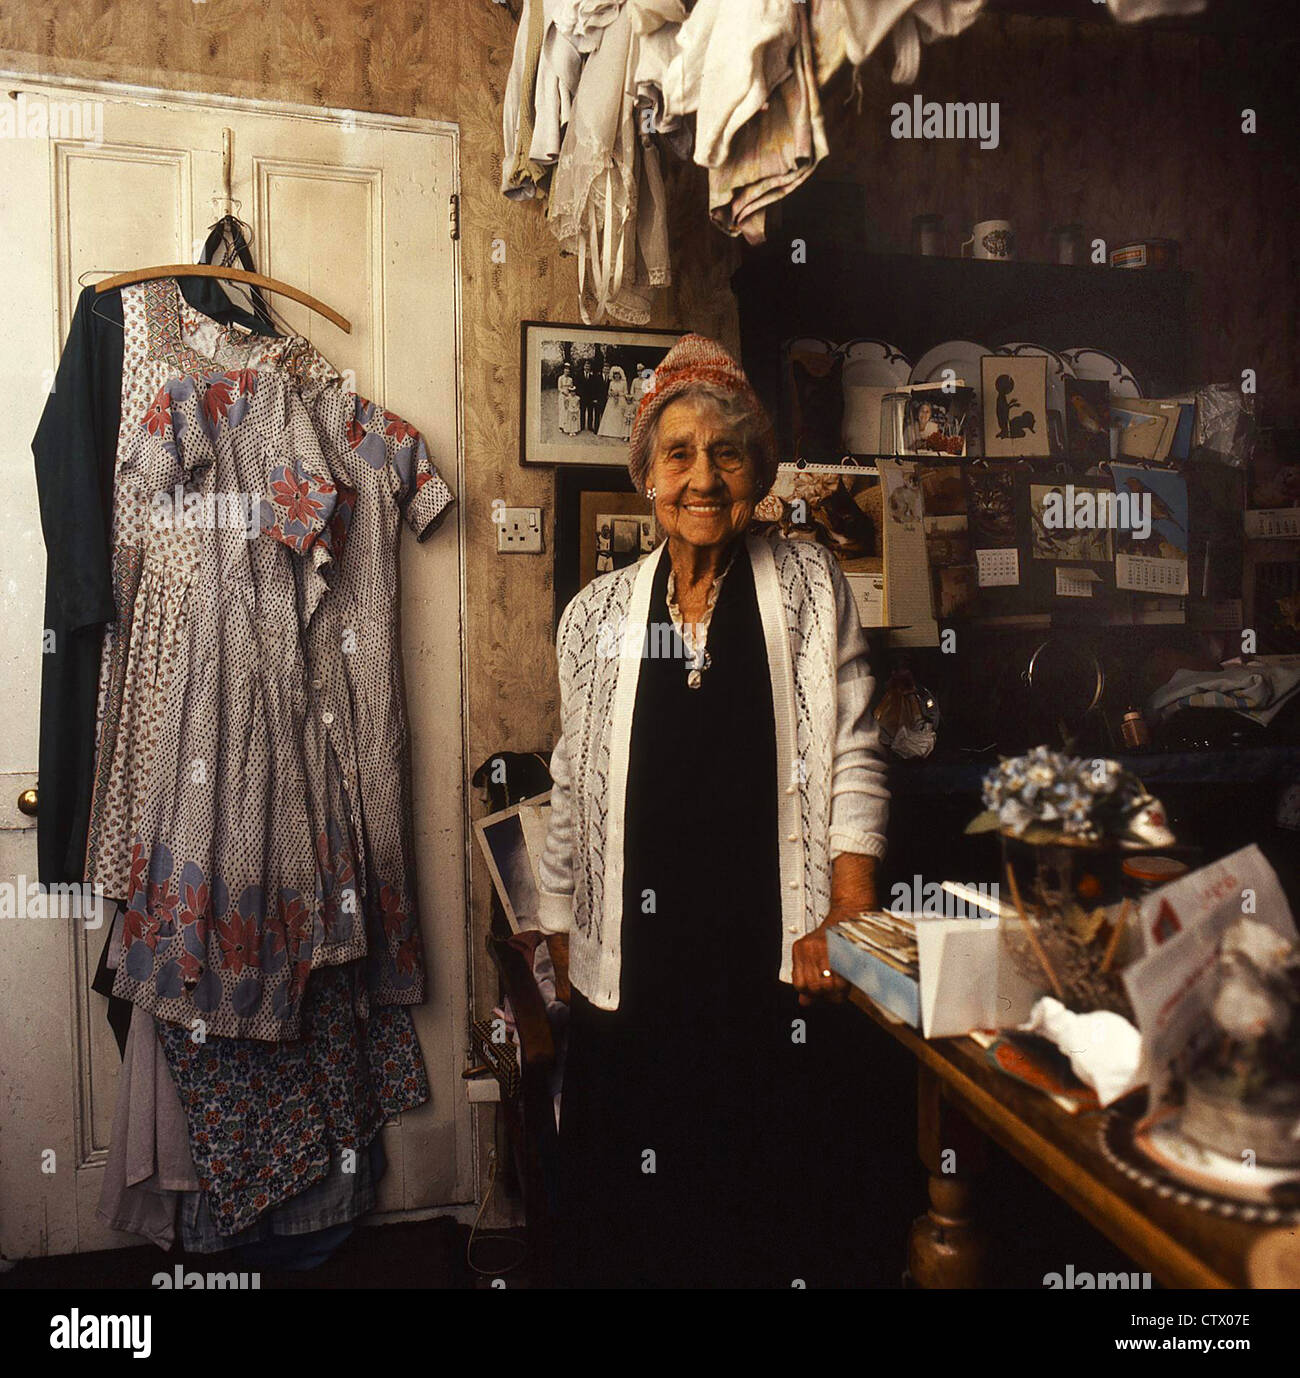 90 Jahre alten verstorbenen Tante "Jessie" in ihrem eigenen Zuhause. 6 x 6 Transparenz Scan. Stockfoto